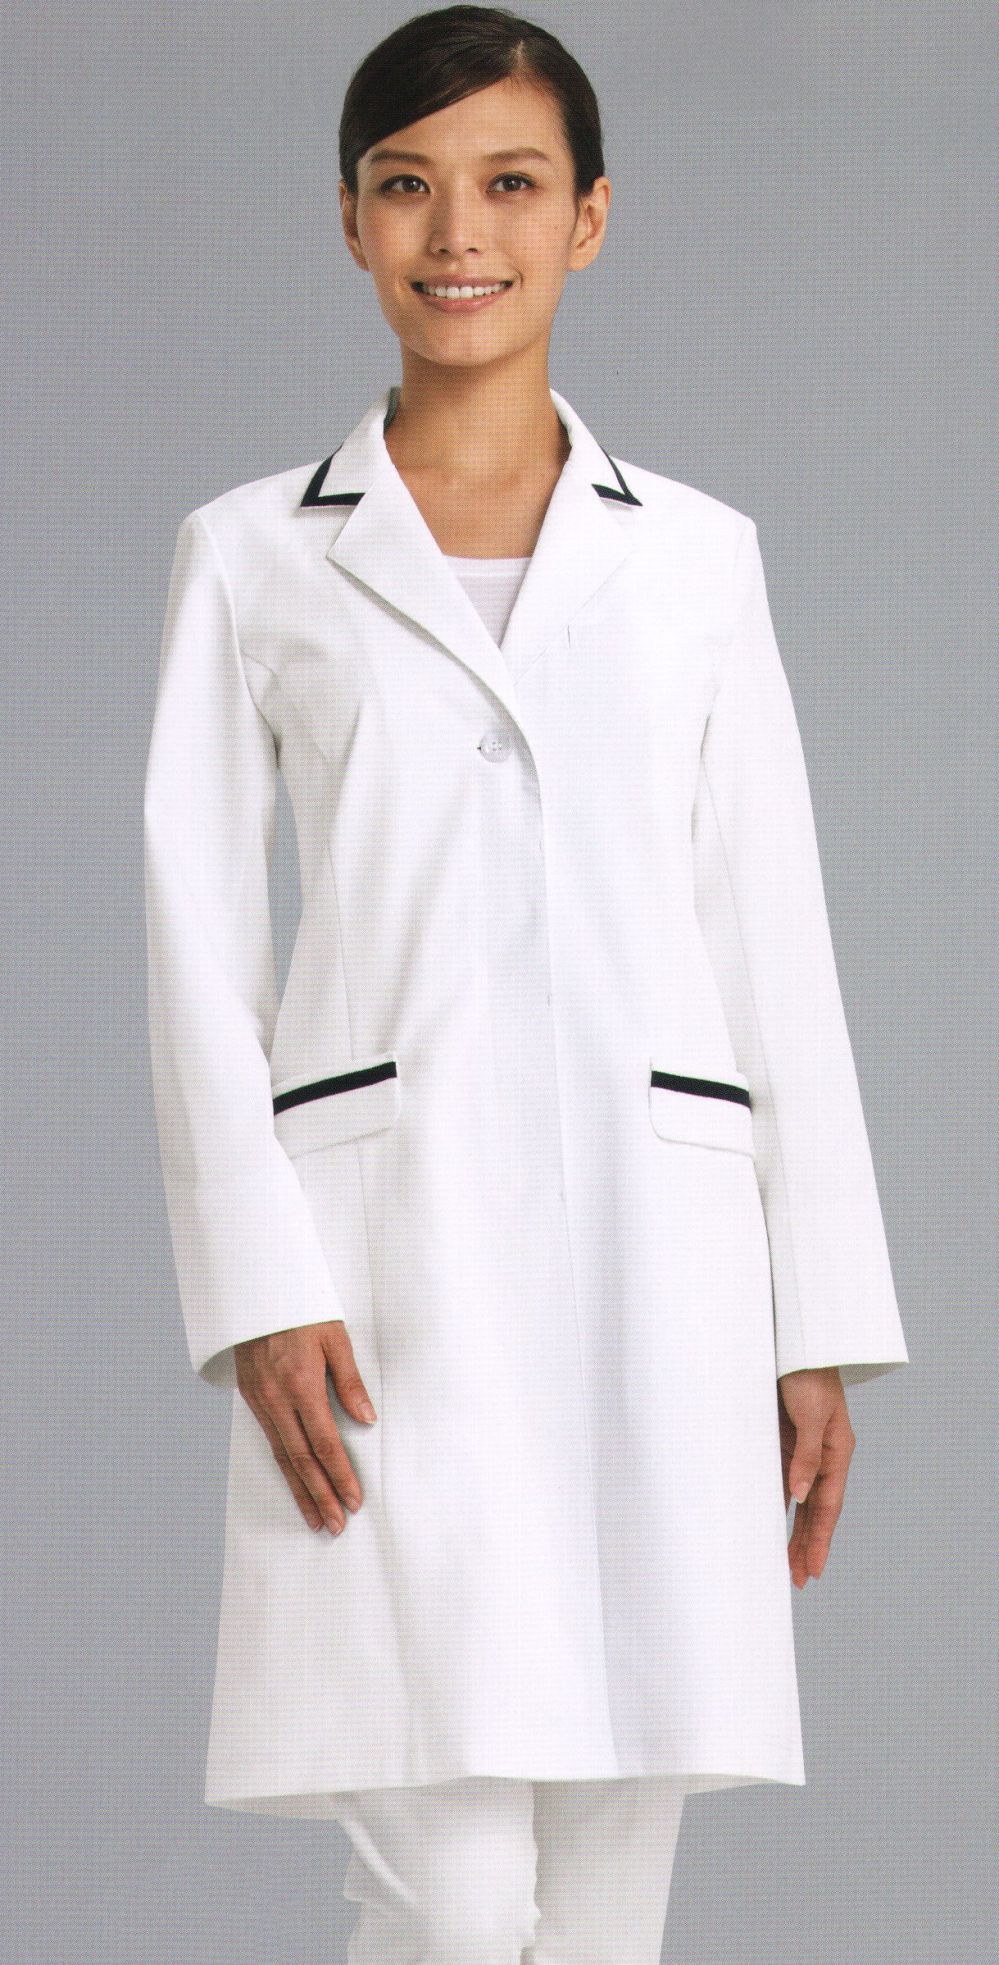 売れ筋ランキングも KAZEN カゼン レディス診察衣S型 長袖 260-90 ホワイト M